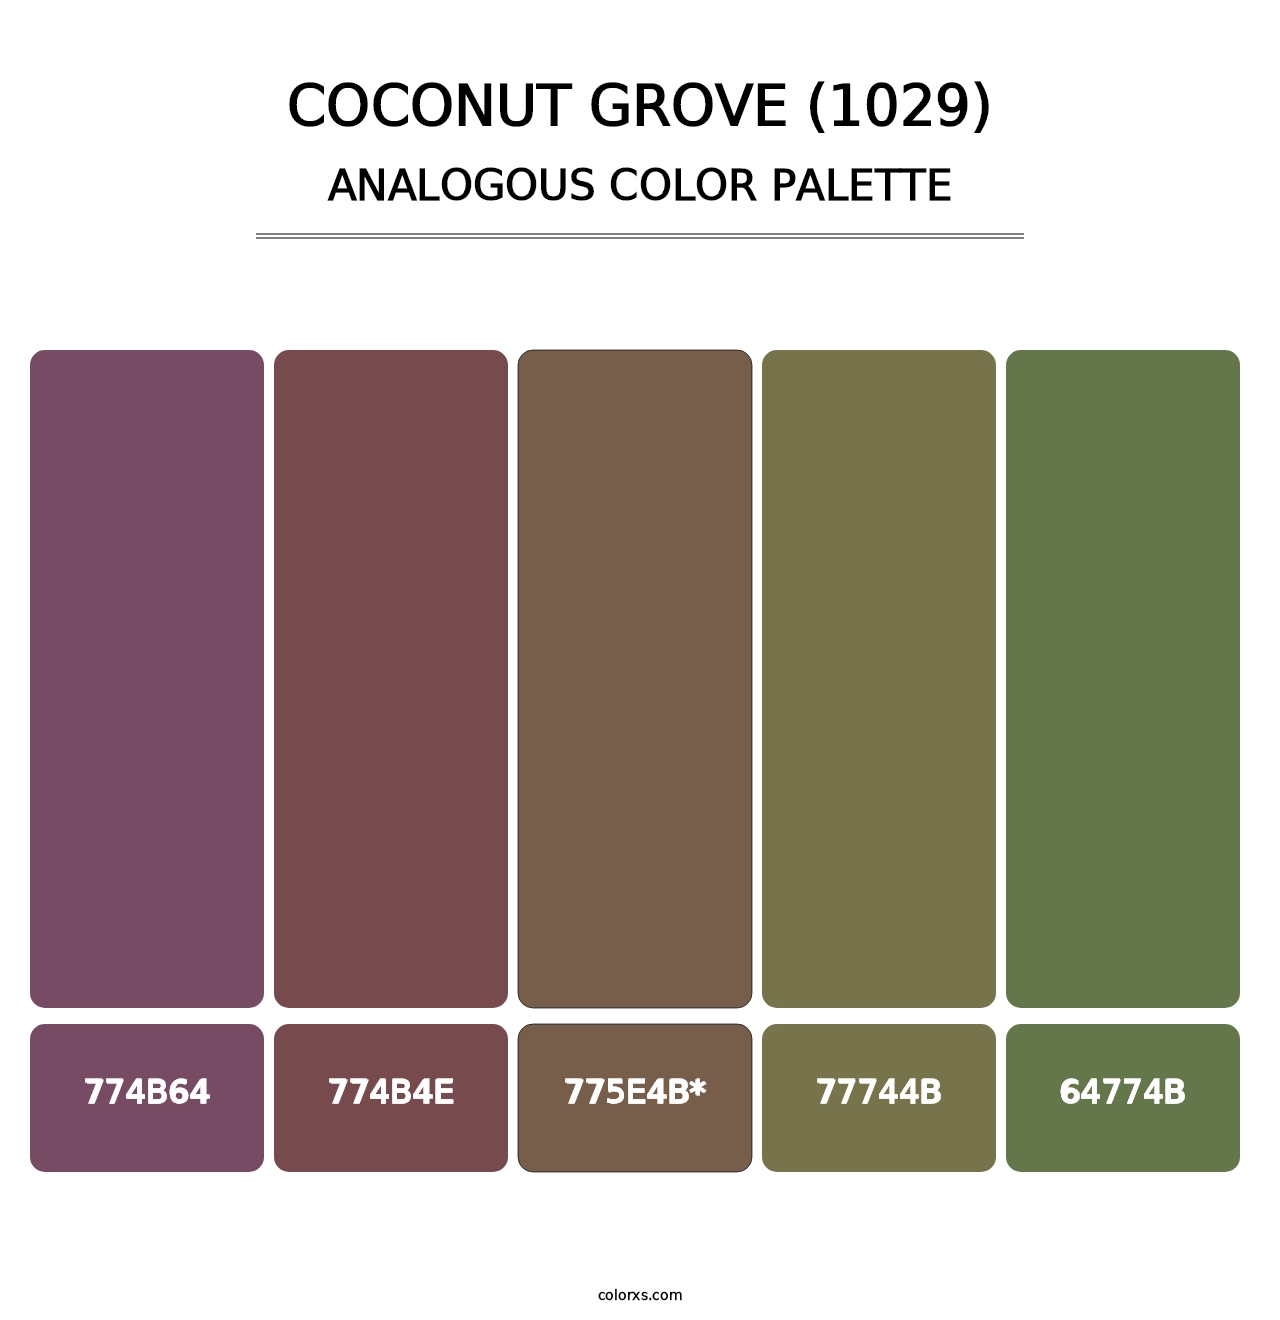 Coconut Grove (1029) - Analogous Color Palette